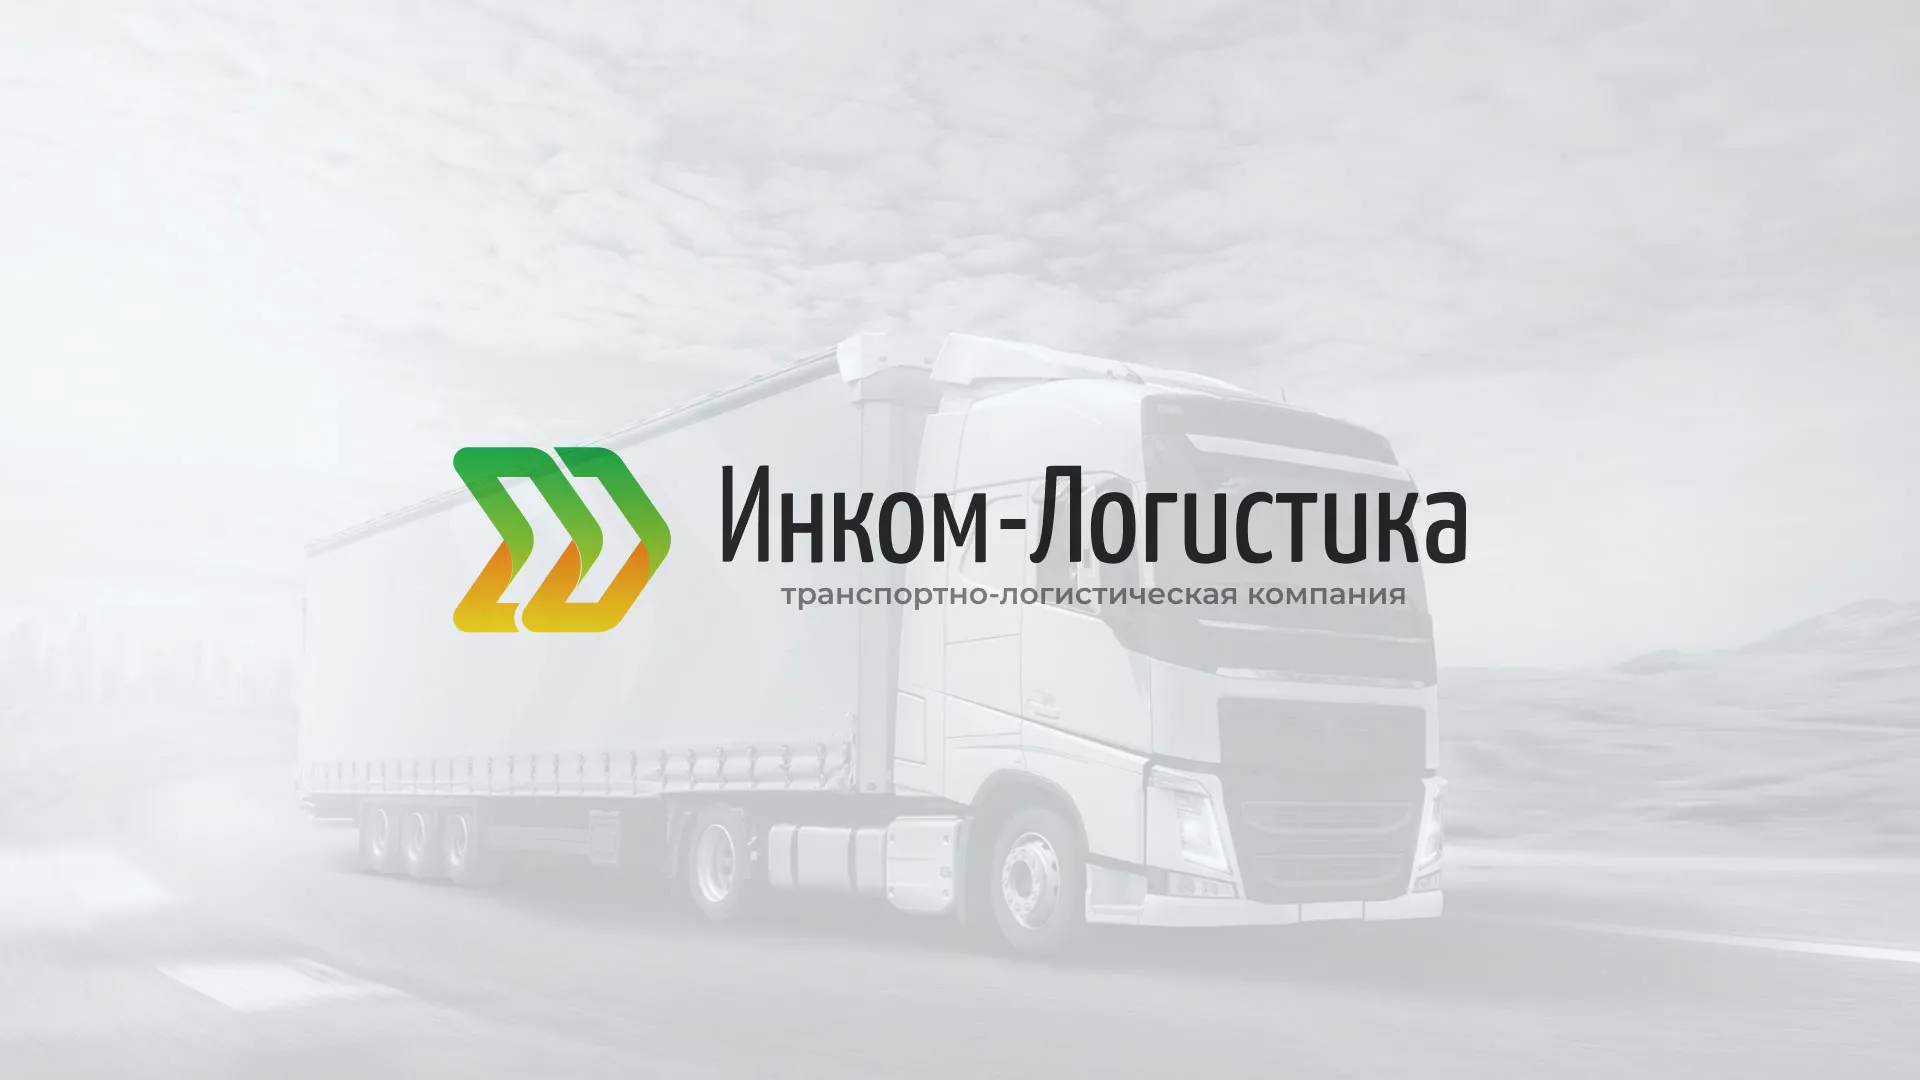 Разработка логотипа и сайта компании «Инком-Логистика» в Волгореченске